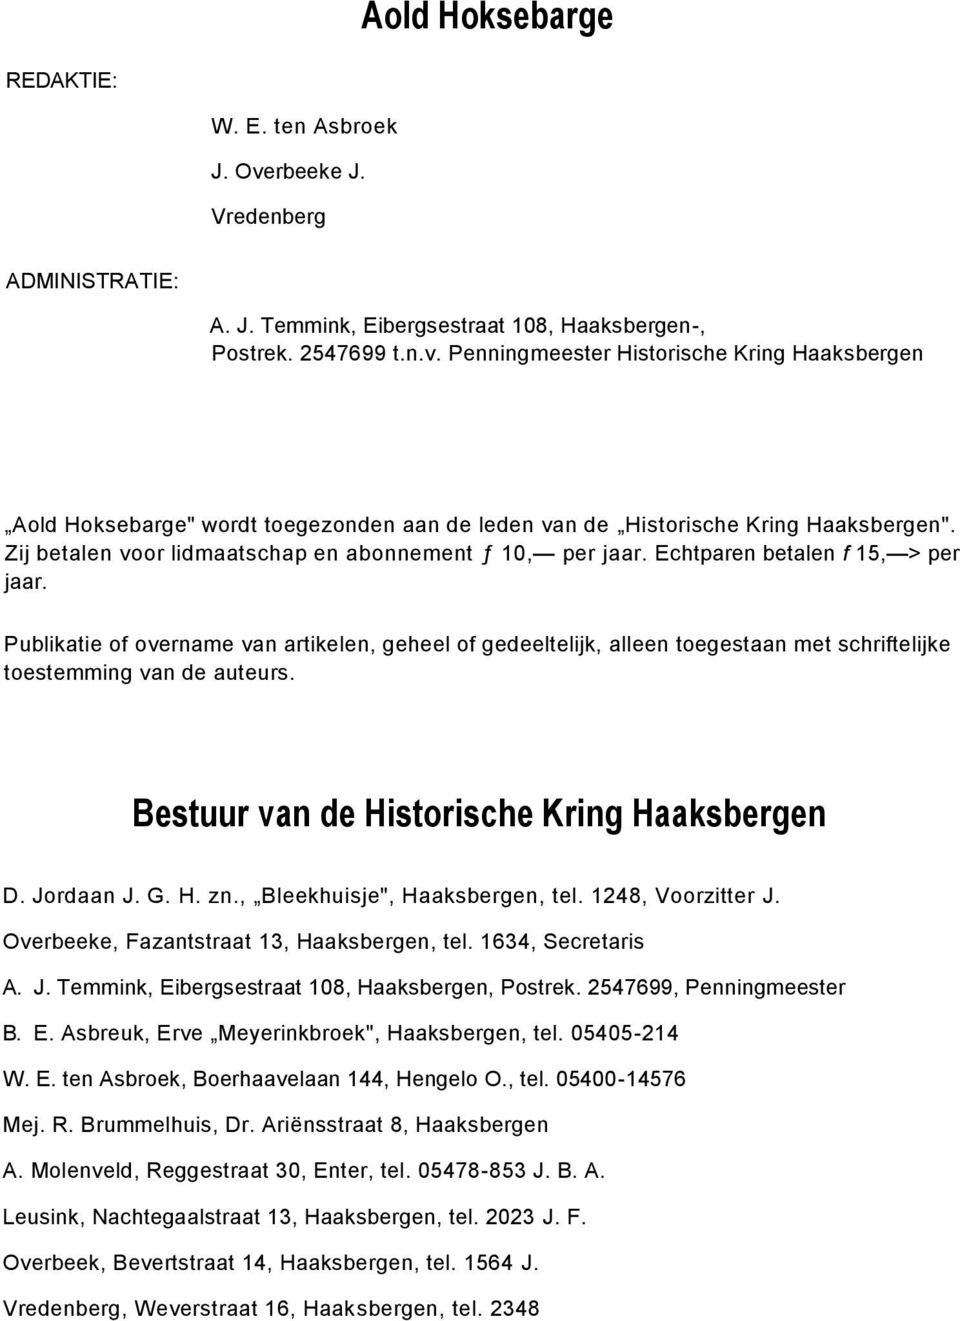 Publikatie of overname van artikelen, geheel of gedeeltelijk, alleen toegestaan met schriftelijke toestemming van de auteurs. Bestuur van de Historische Kring Haaksbergen D. Jordaan J. G. H. zn.